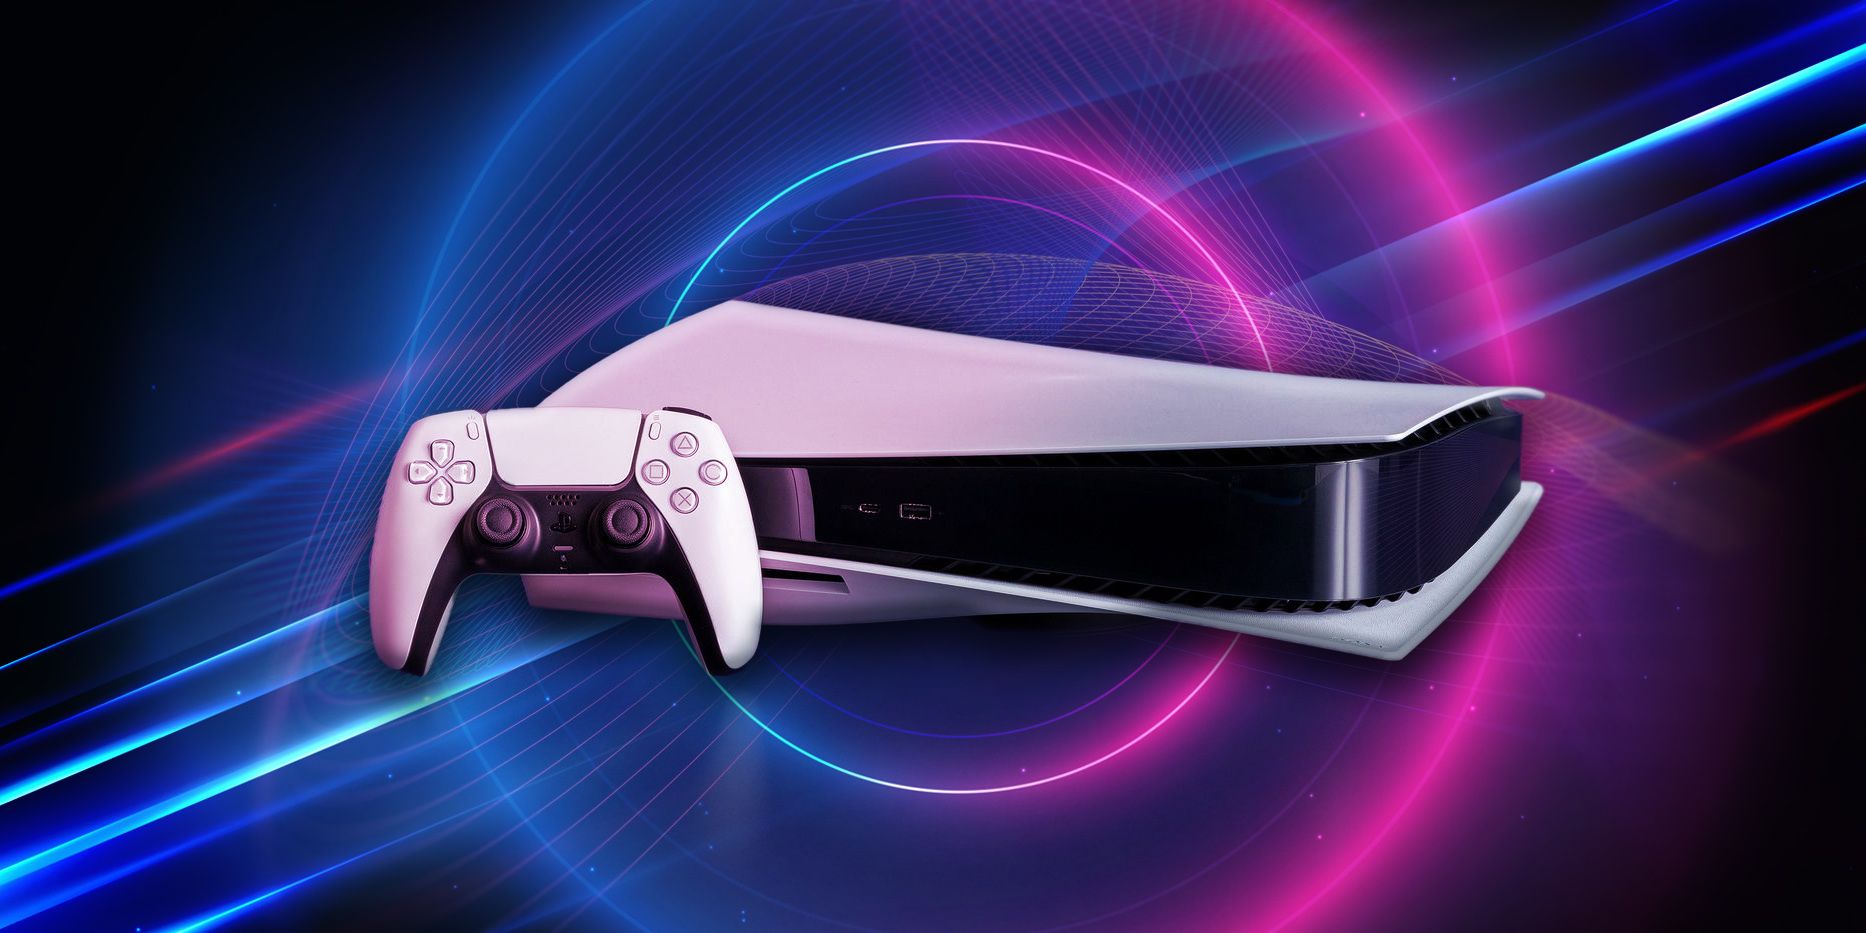 Sony PlayStation 5 (PS5) Digital Console Slim 